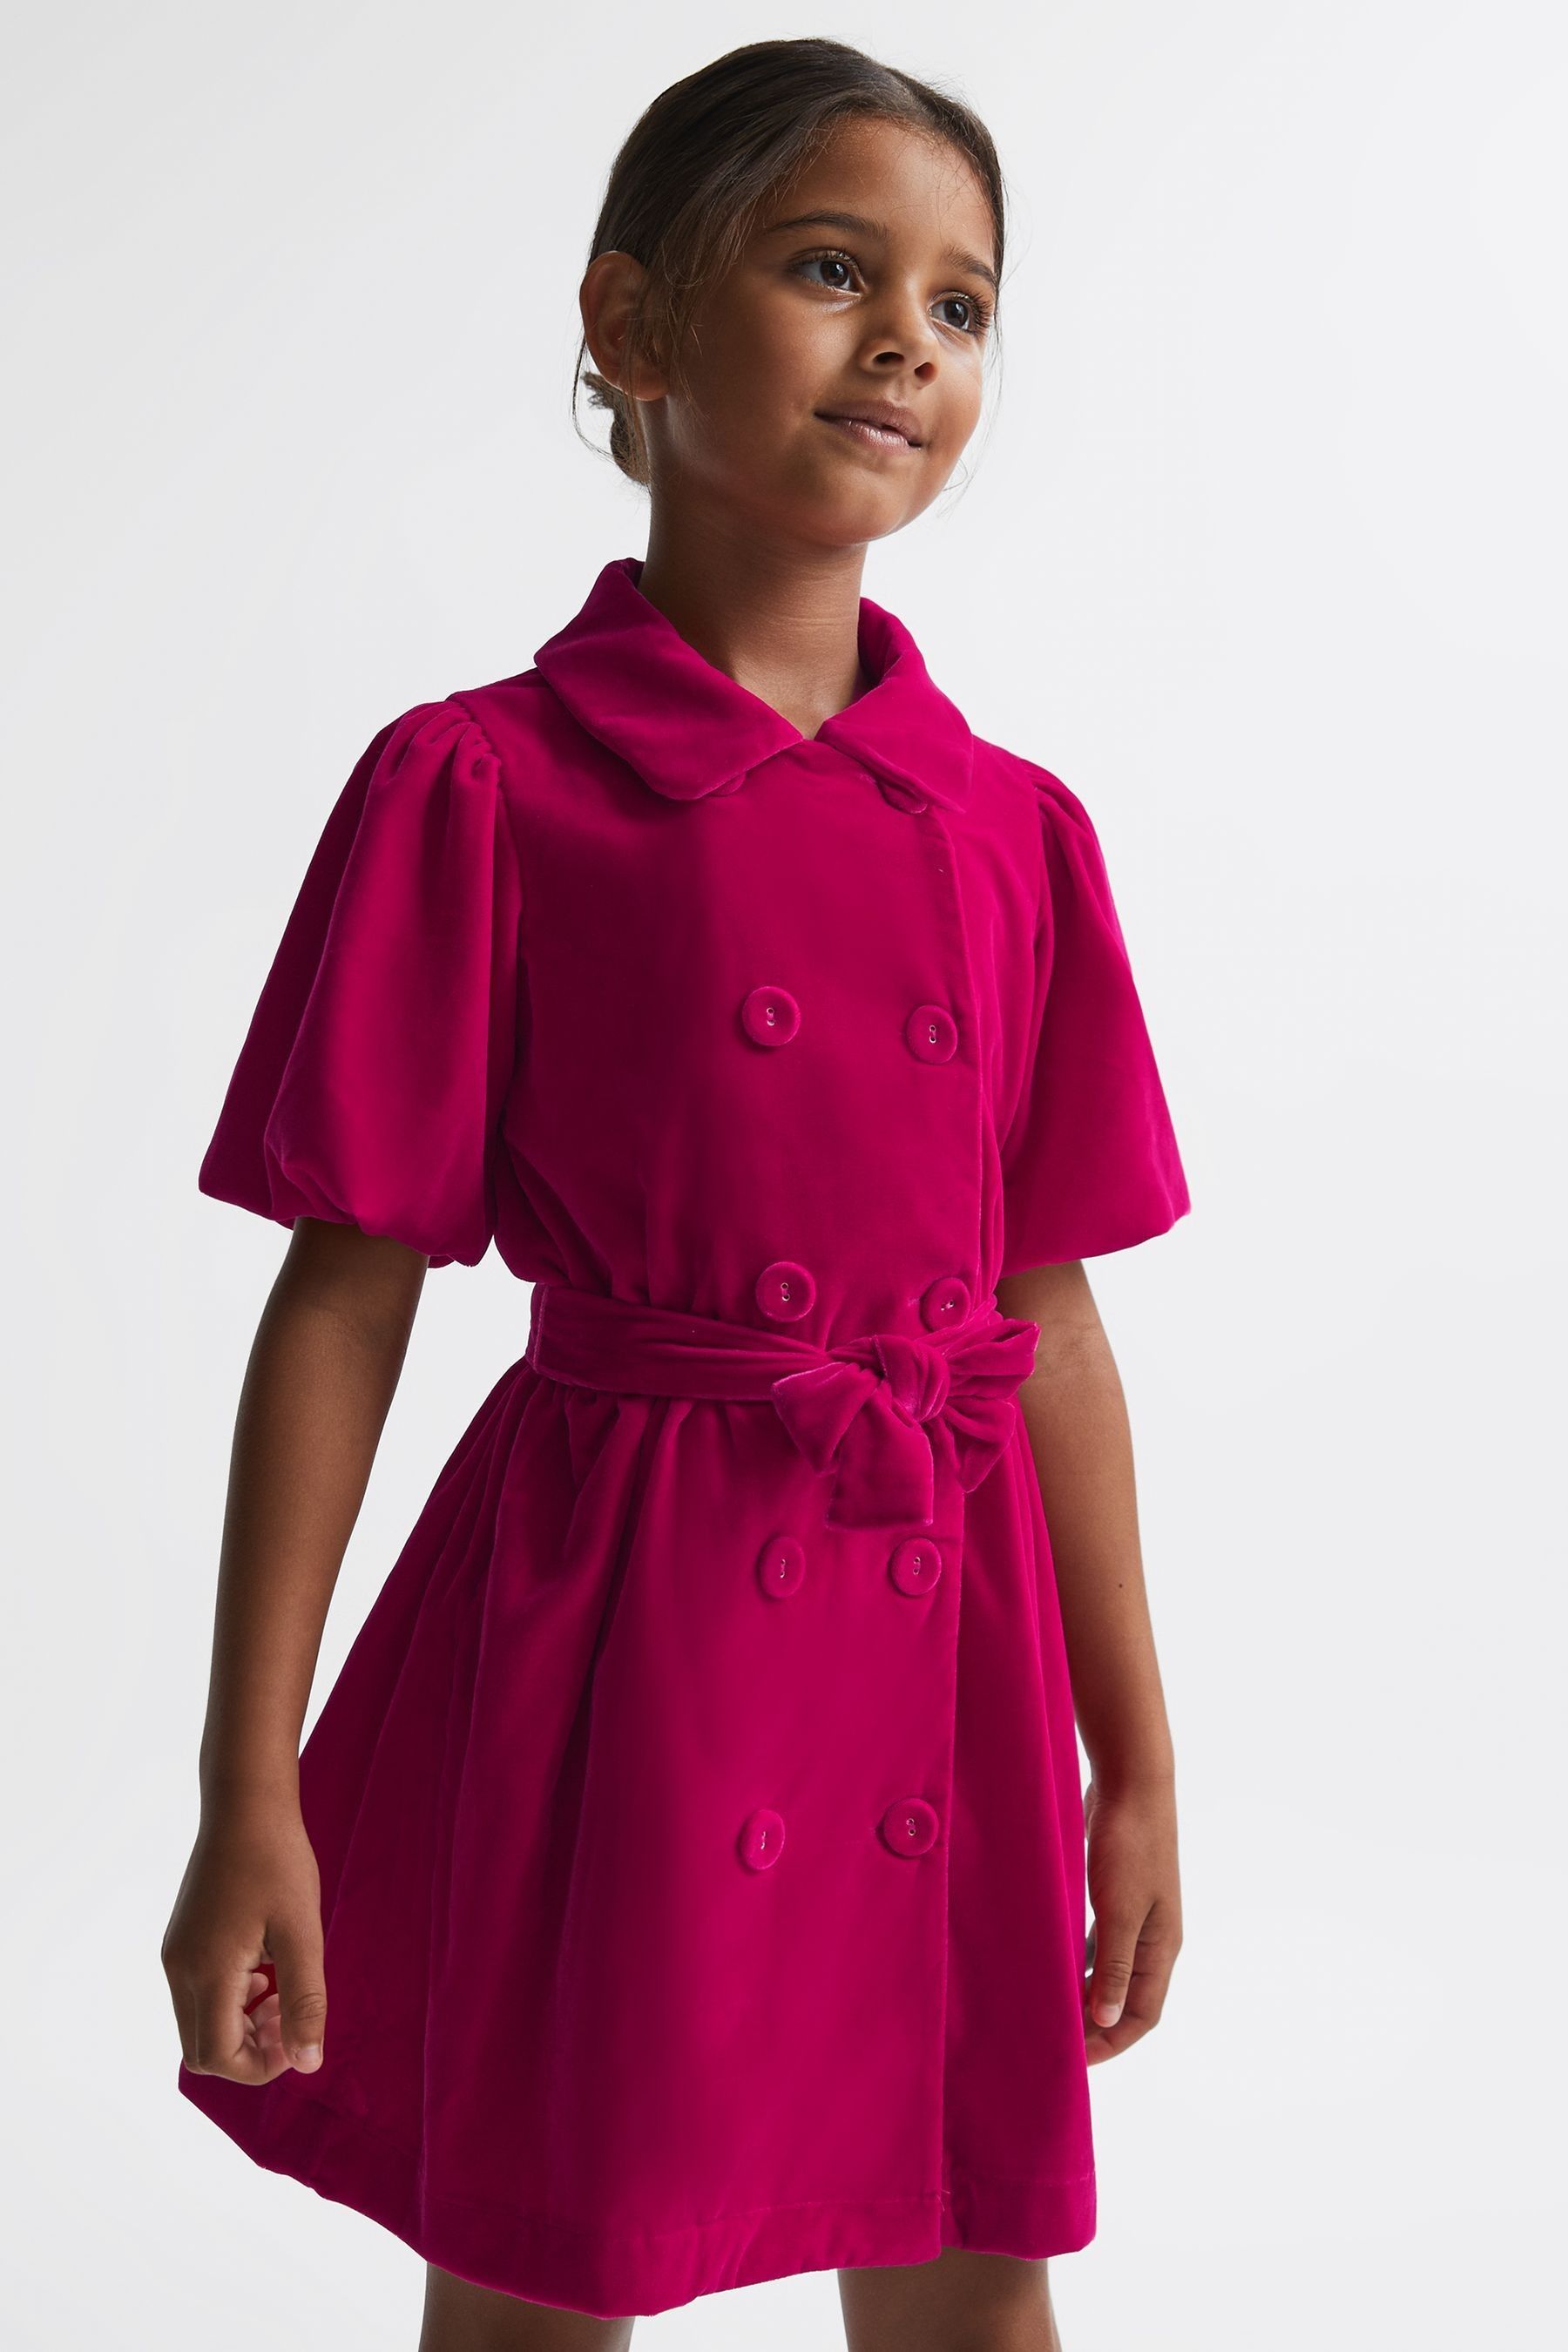 Reiss Kids' Nancy - Pink Senior Velvet Double Breasted Dress, Uk 13-14 Yrs